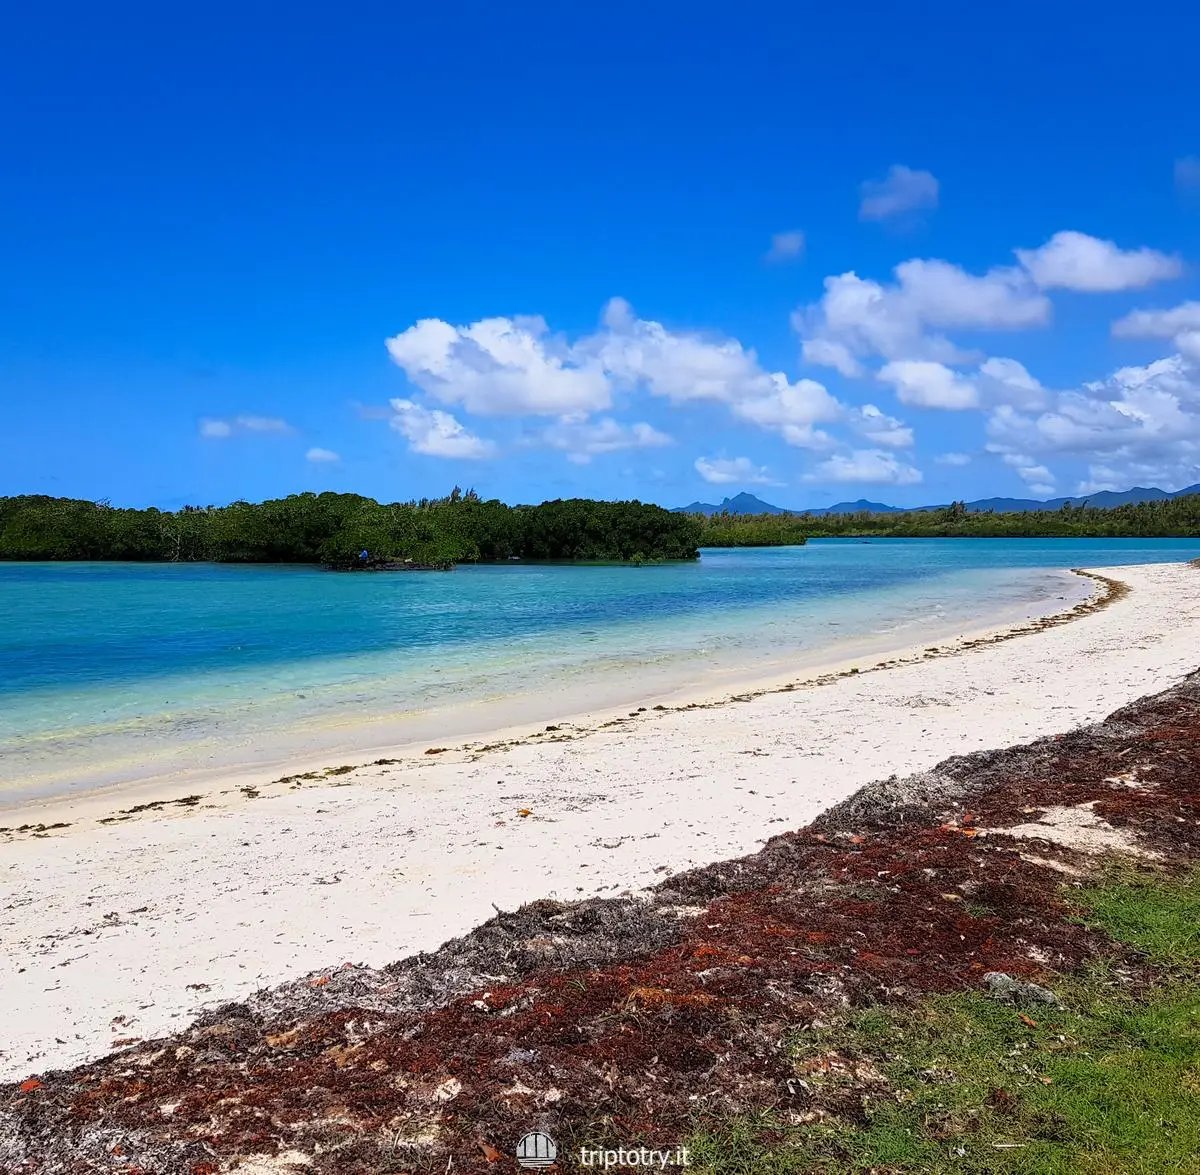 Migliori spiagge Mauritius - Mangrovie spiaggia bianca e mare azzurro alla Spiaggia di Bras d'eau a Mauritius - Best beaches in Mauritius